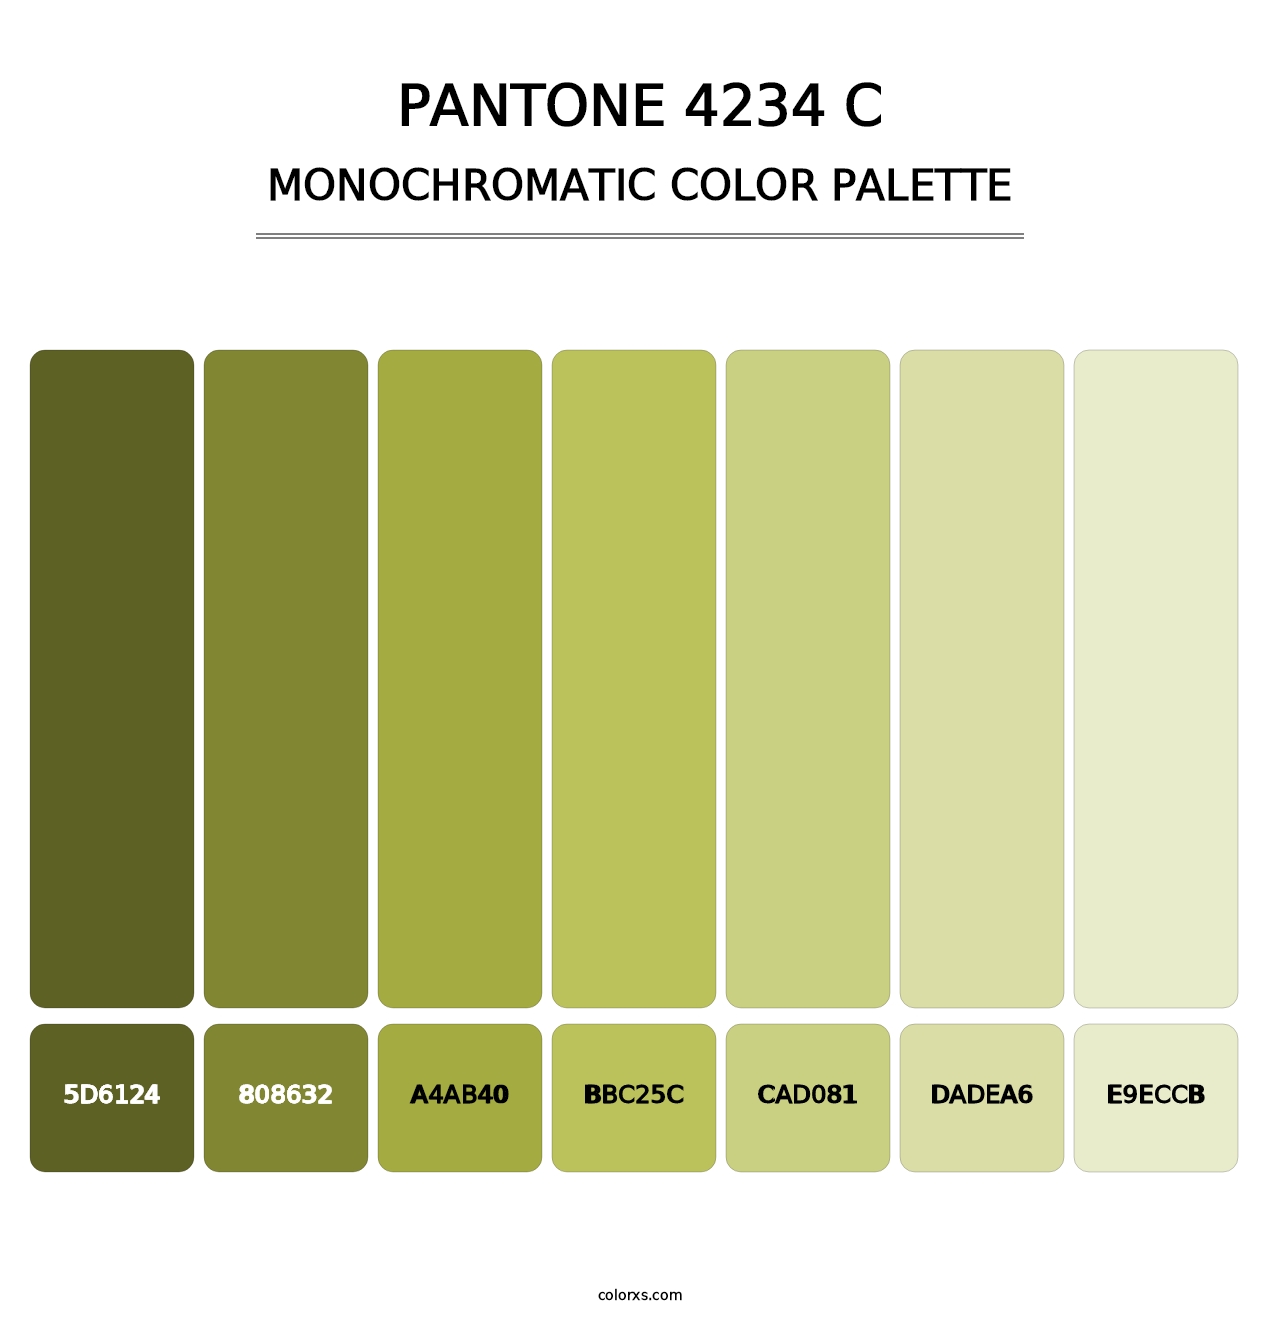 PANTONE 4234 C - Monochromatic Color Palette